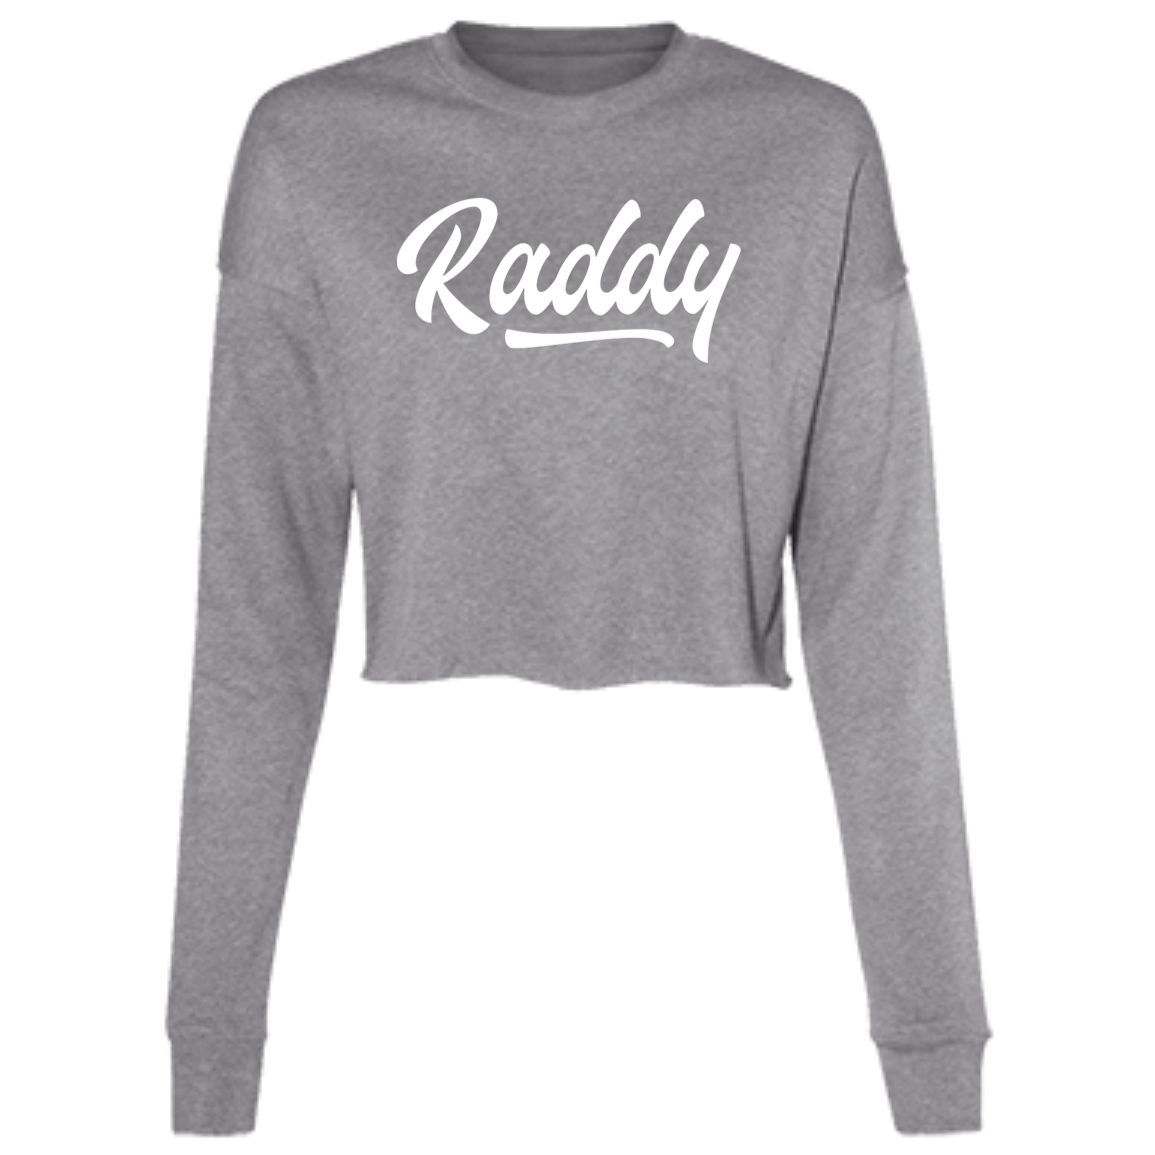 Raddy Ladies' Grey Cropped Fleece Crew